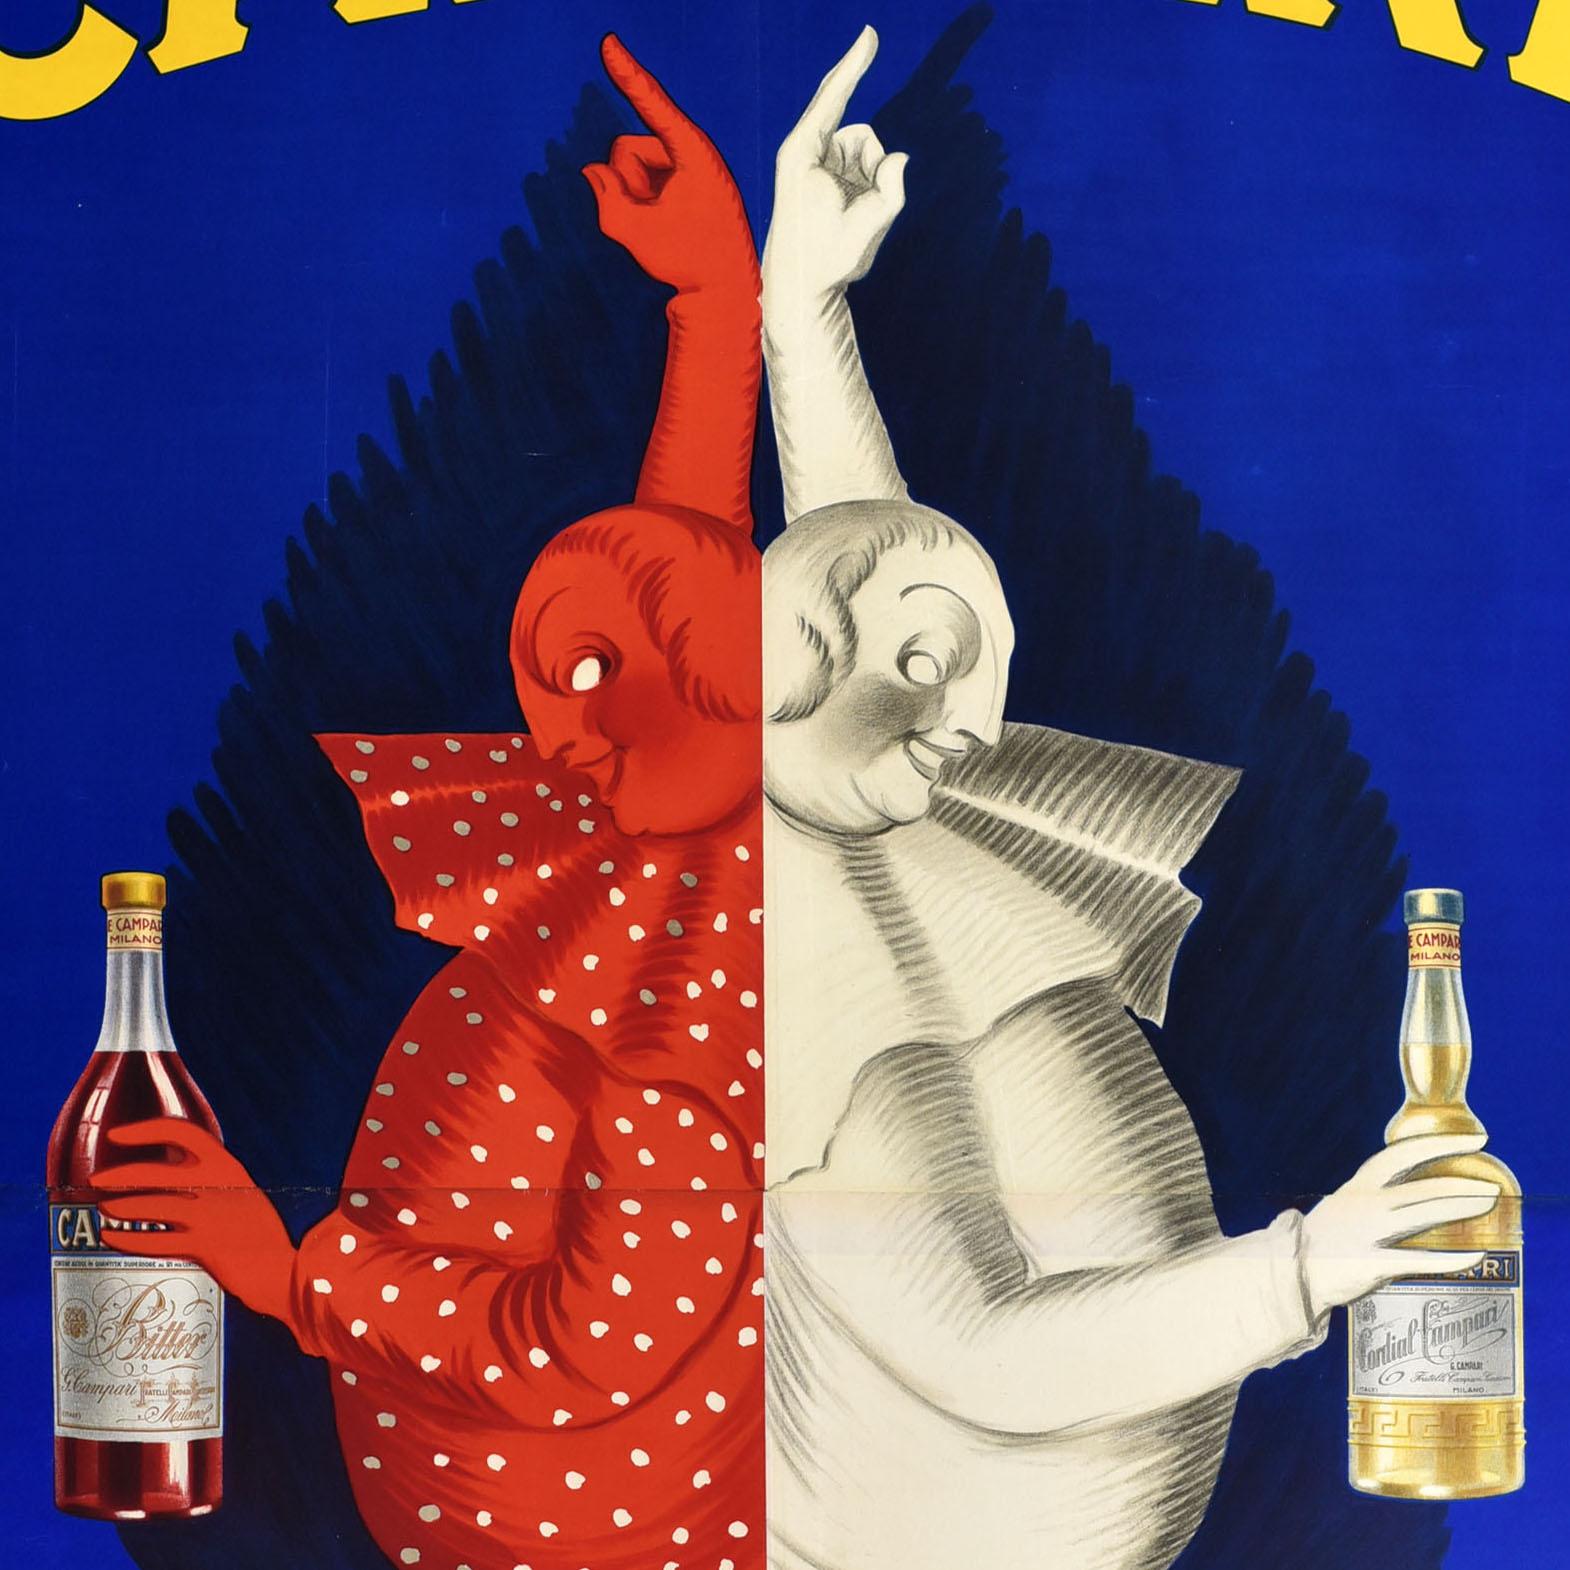 Original Vintage Drink Advertising Poster Campari Milano Cappiello Alcohol Italy - Print by Leonetto Cappiello